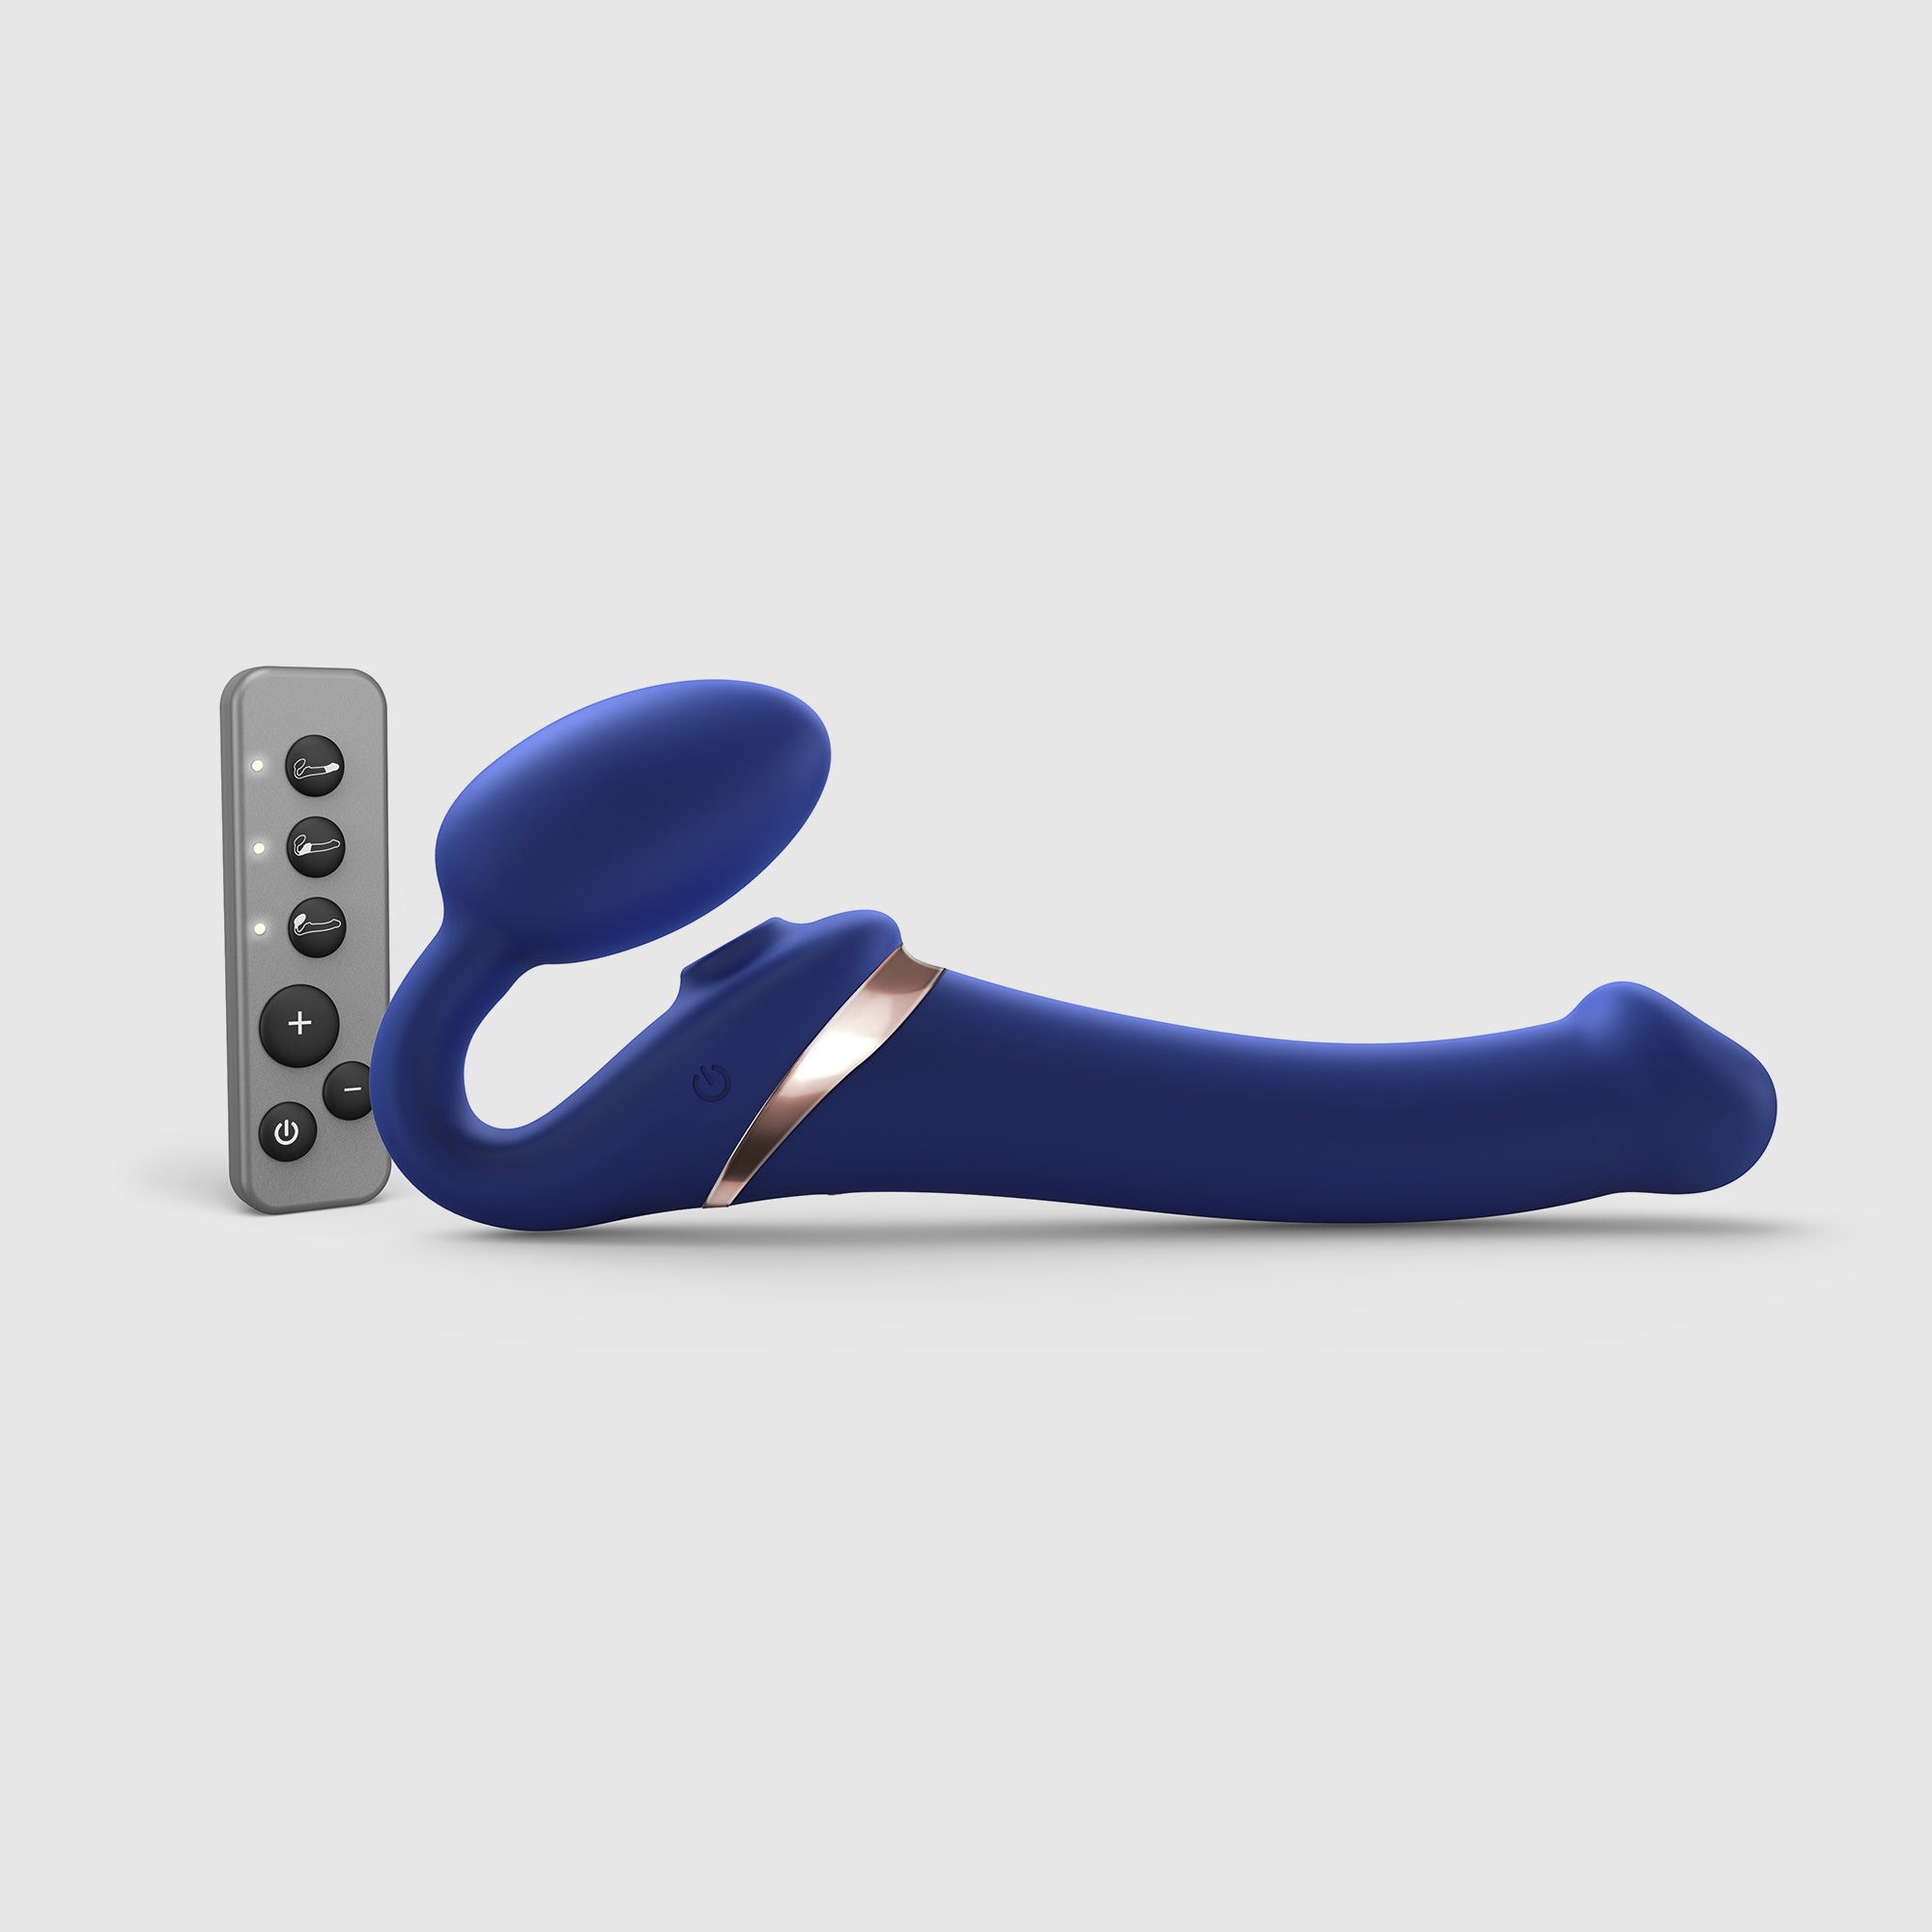 strap-on-multi-orgasmo-telecomando-3-motori-blu-notturno-strap-on-me